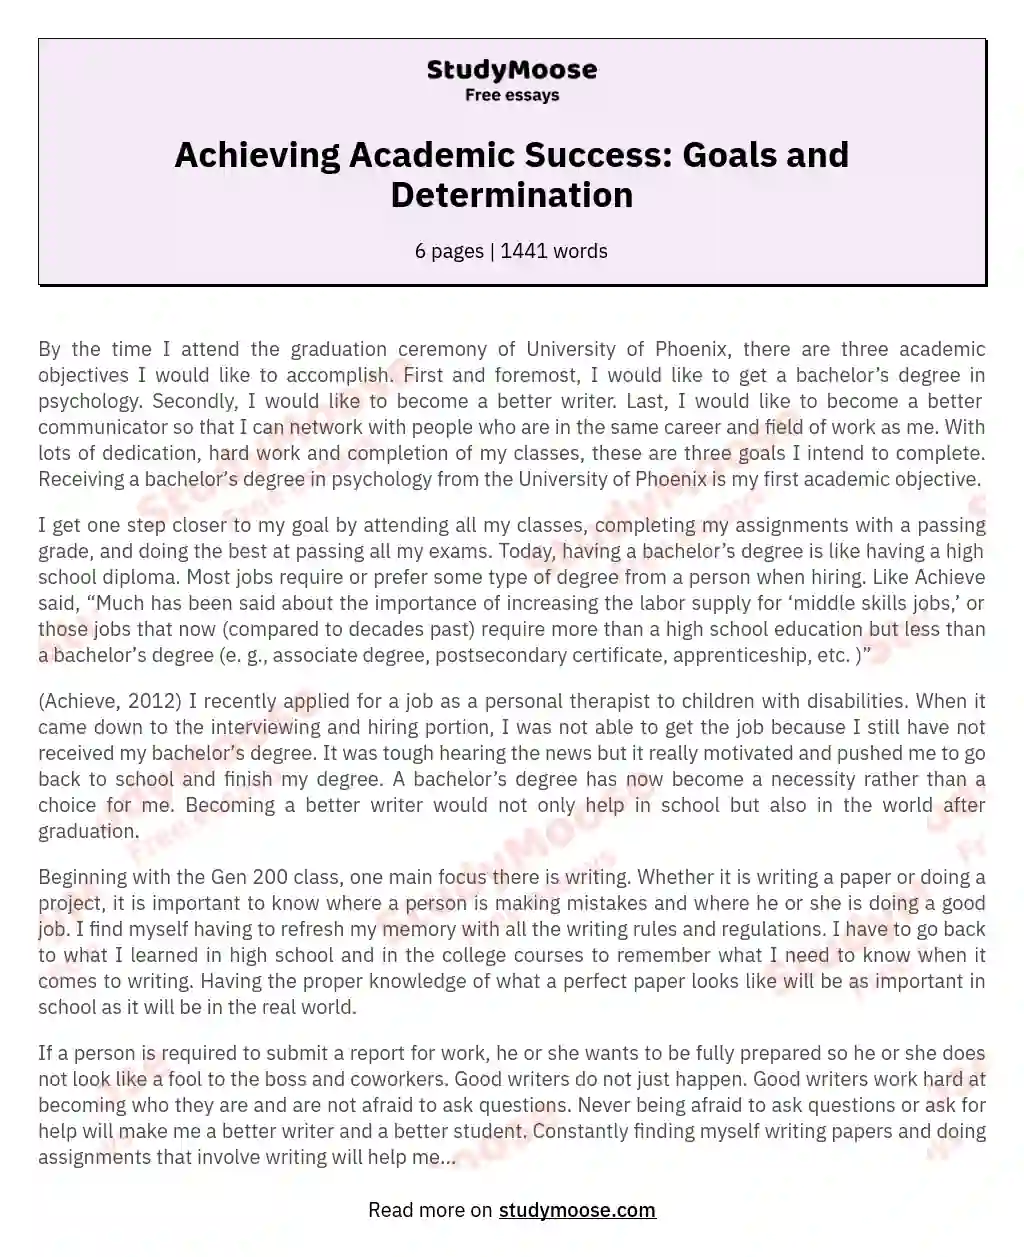 Achieving Academic Success: Goals and Determination essay